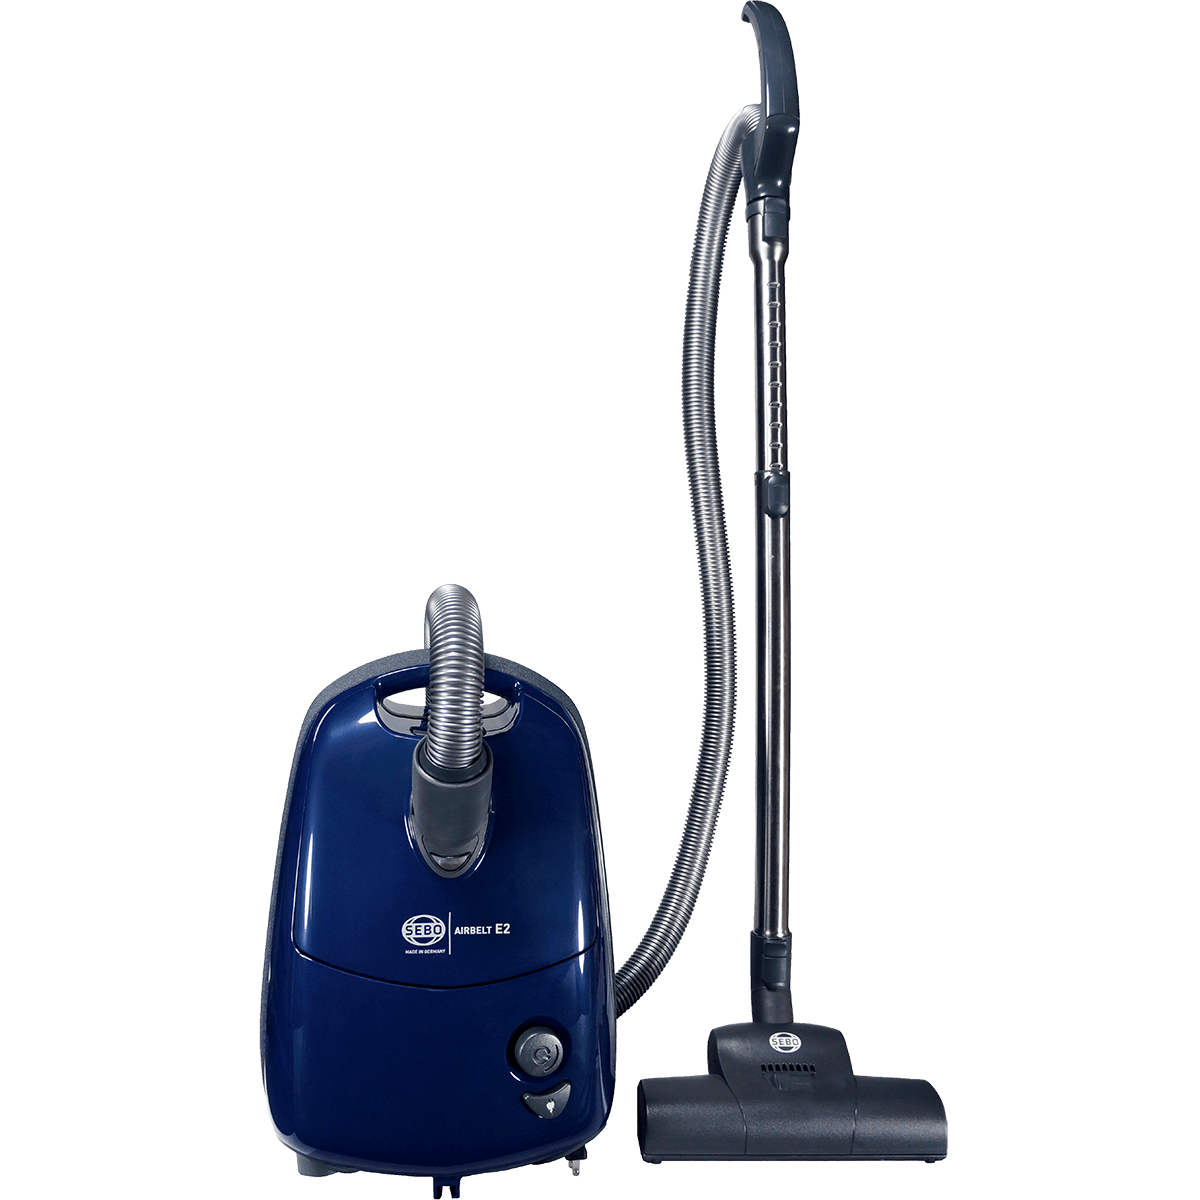 SEBO Airbelt E2 Turbo Canister Vacuum Cleaner